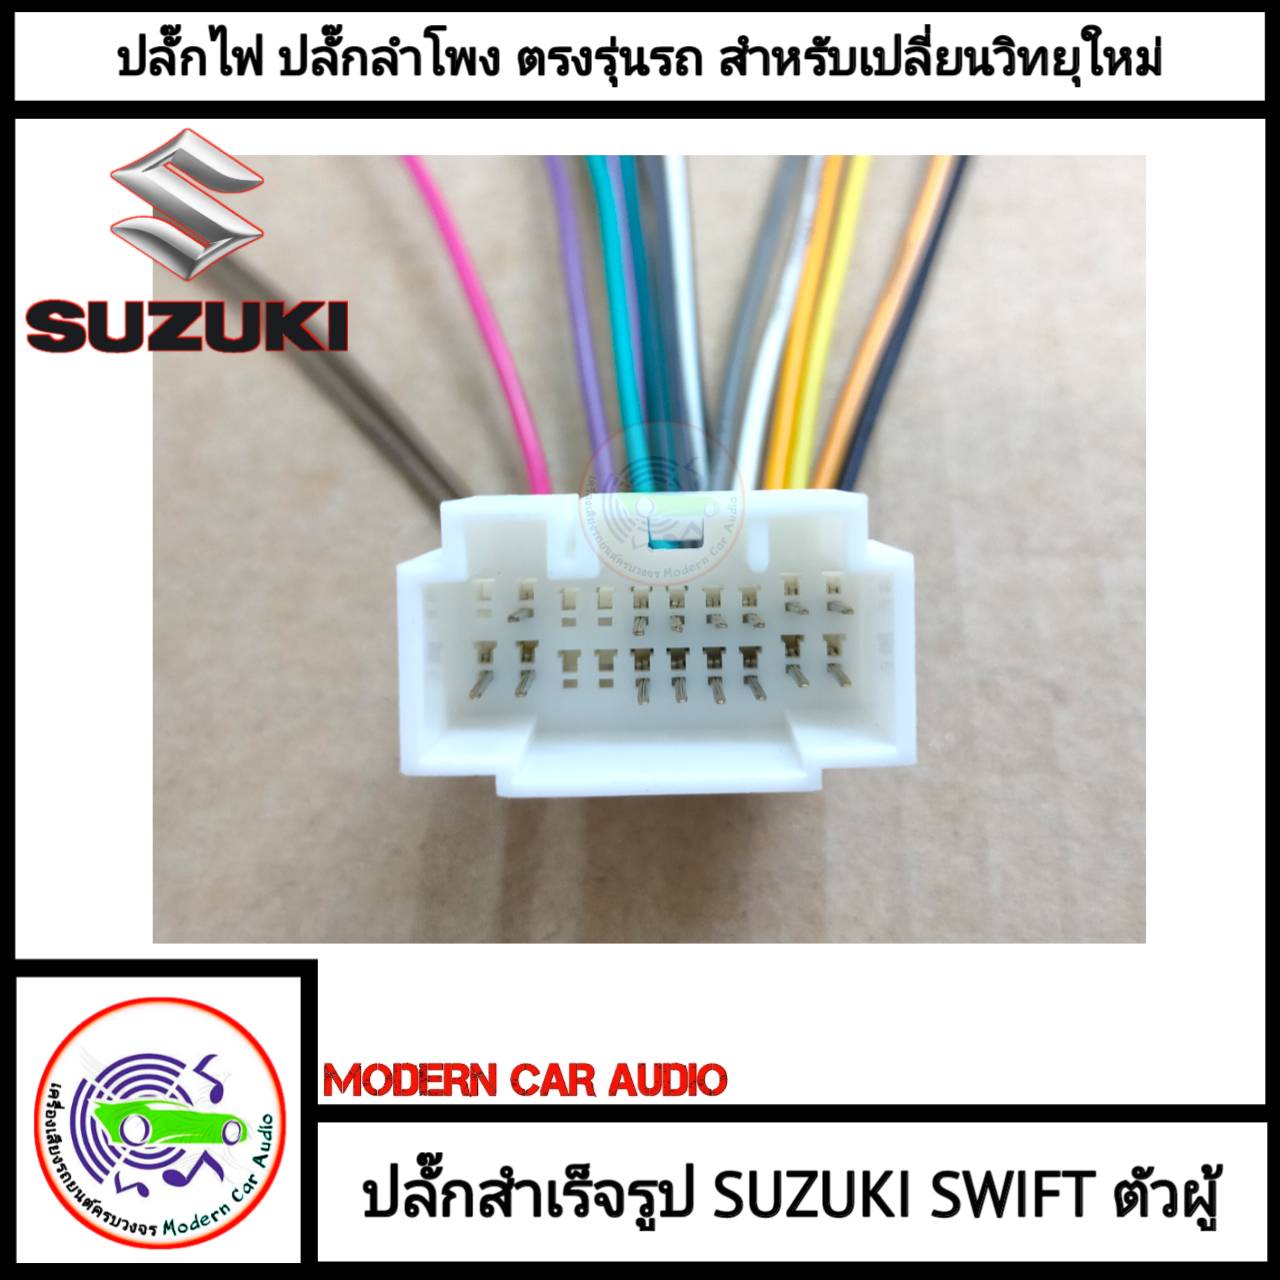 ปลั๊กท้ายวิทยุ SUZUKI SWIFT (สำหรับเปลี่ยนวิทยุใหม่) ตัวผู้ ปลั๊กท้ายวิทยุ สายไฟสำเร็จรูป แบบไม่ต้องตัดต่อสายไฟรถ